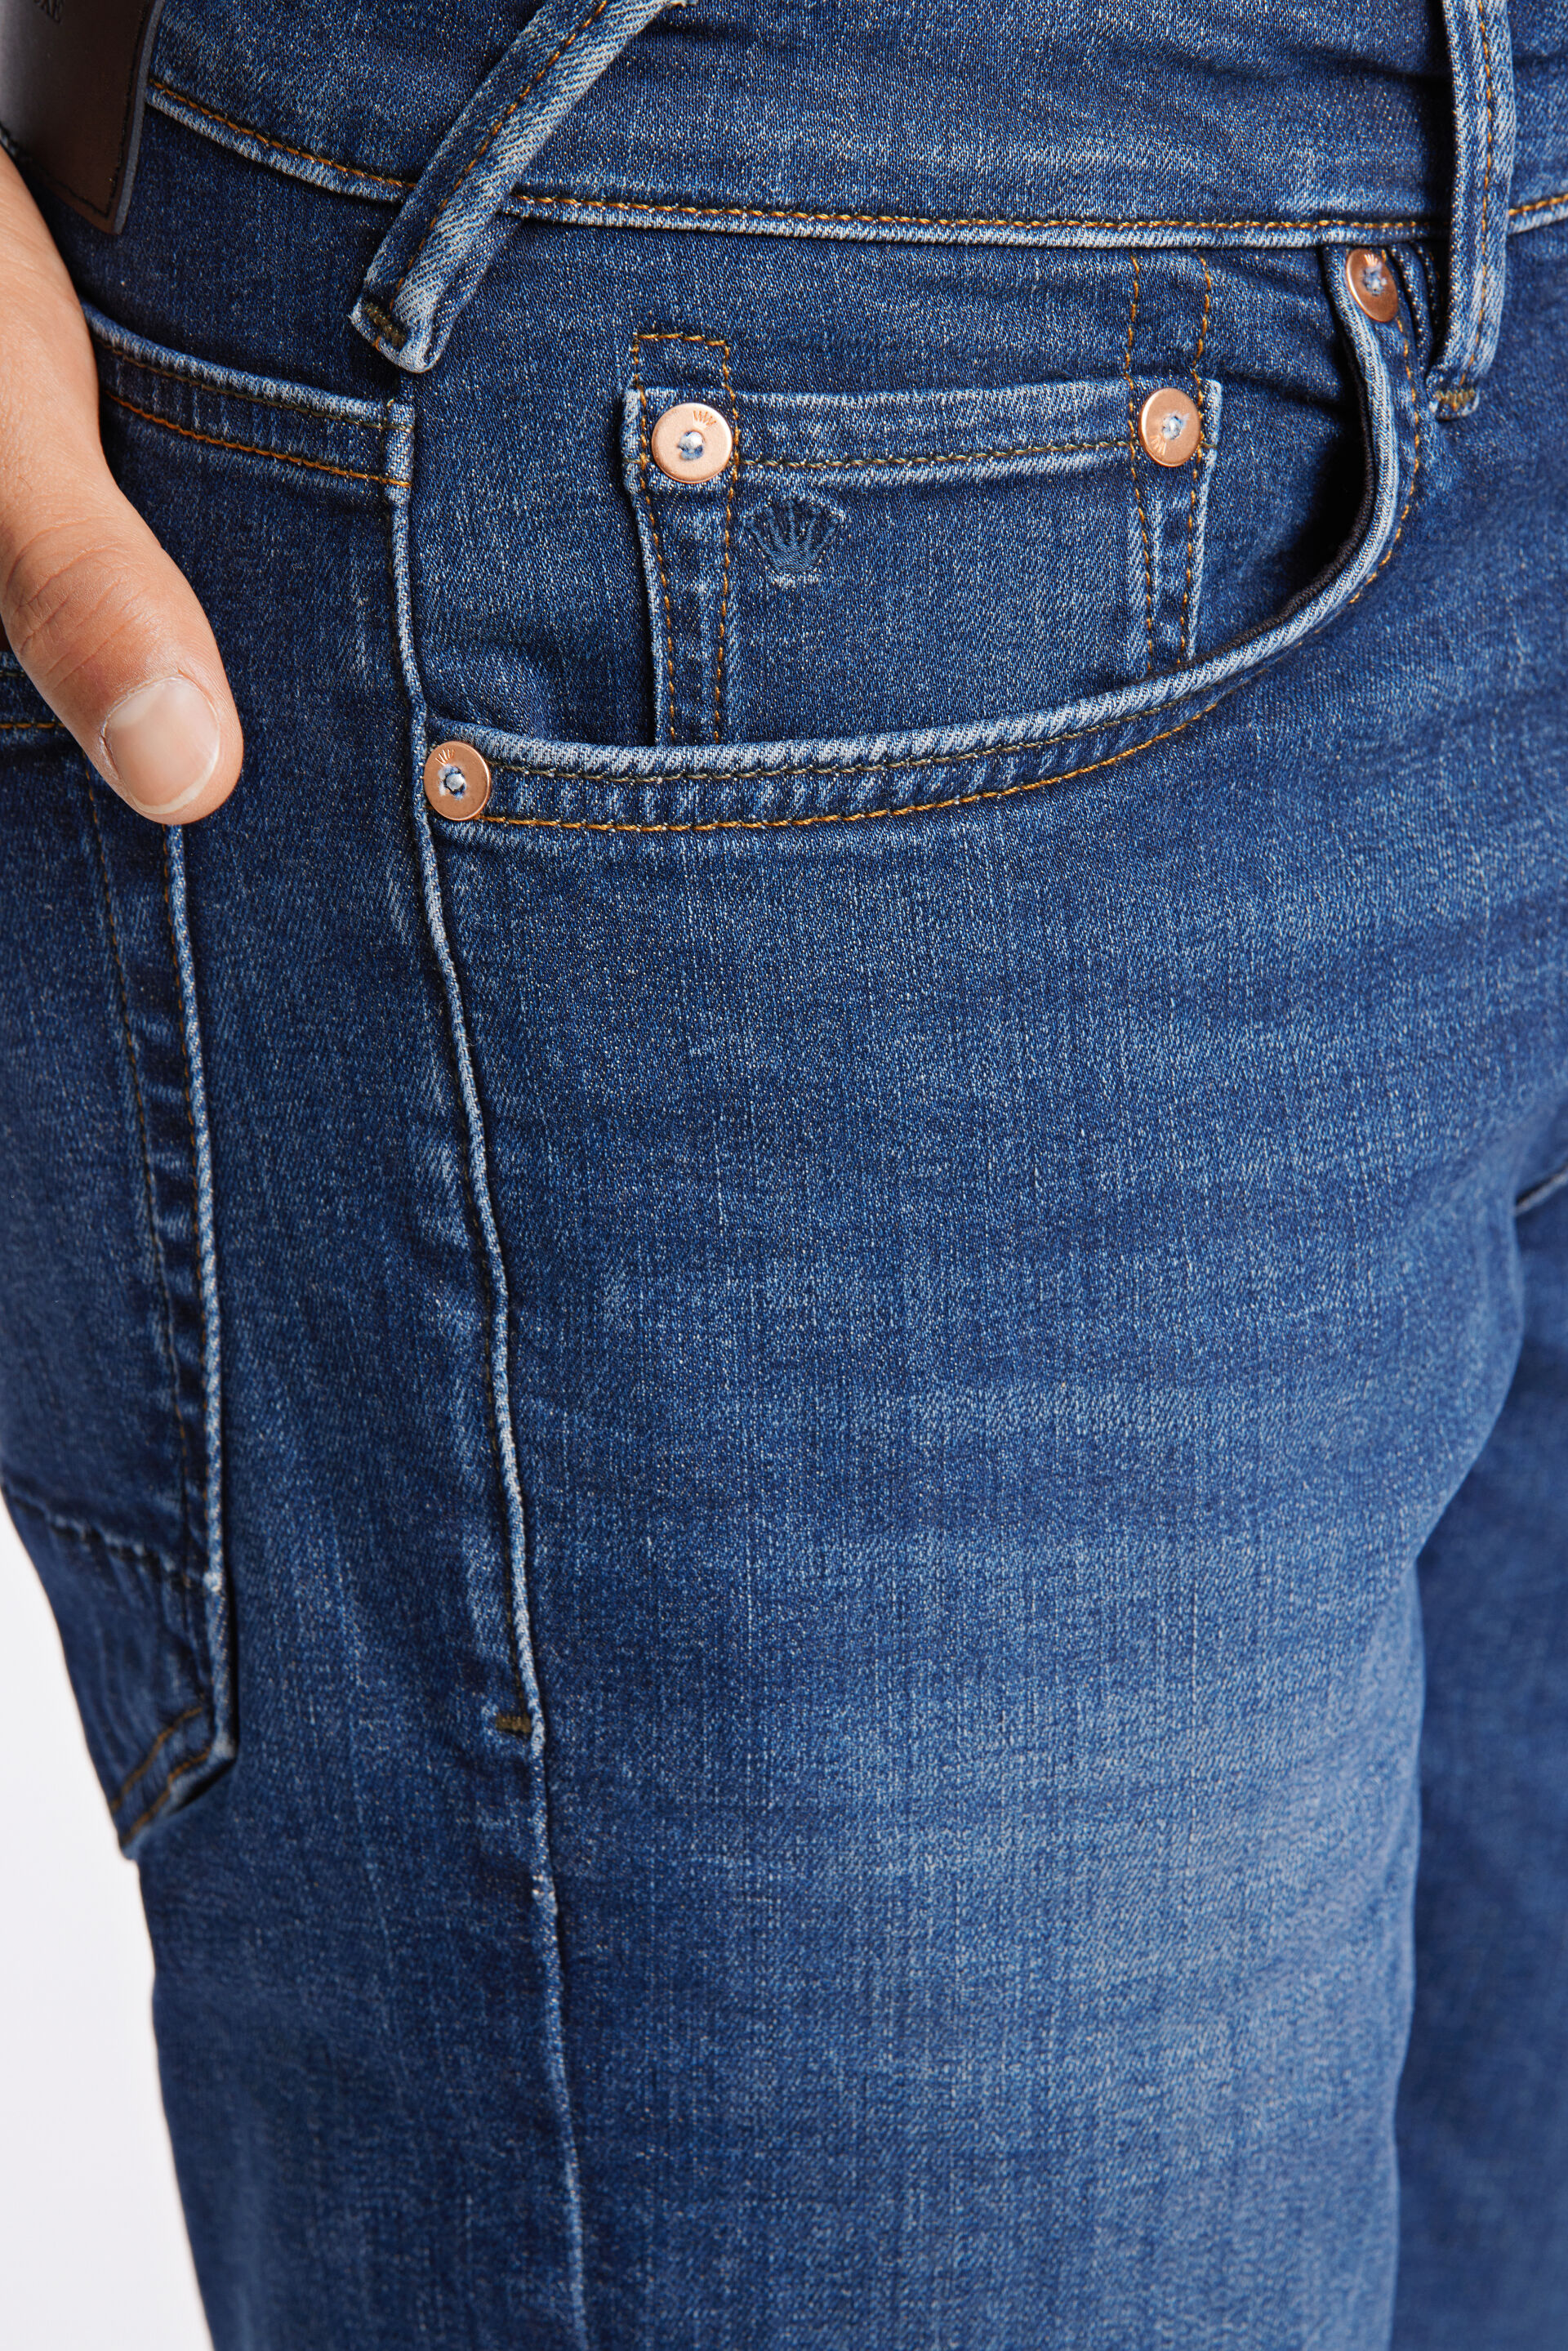 Junk de Luxe  Jeans 60-025012